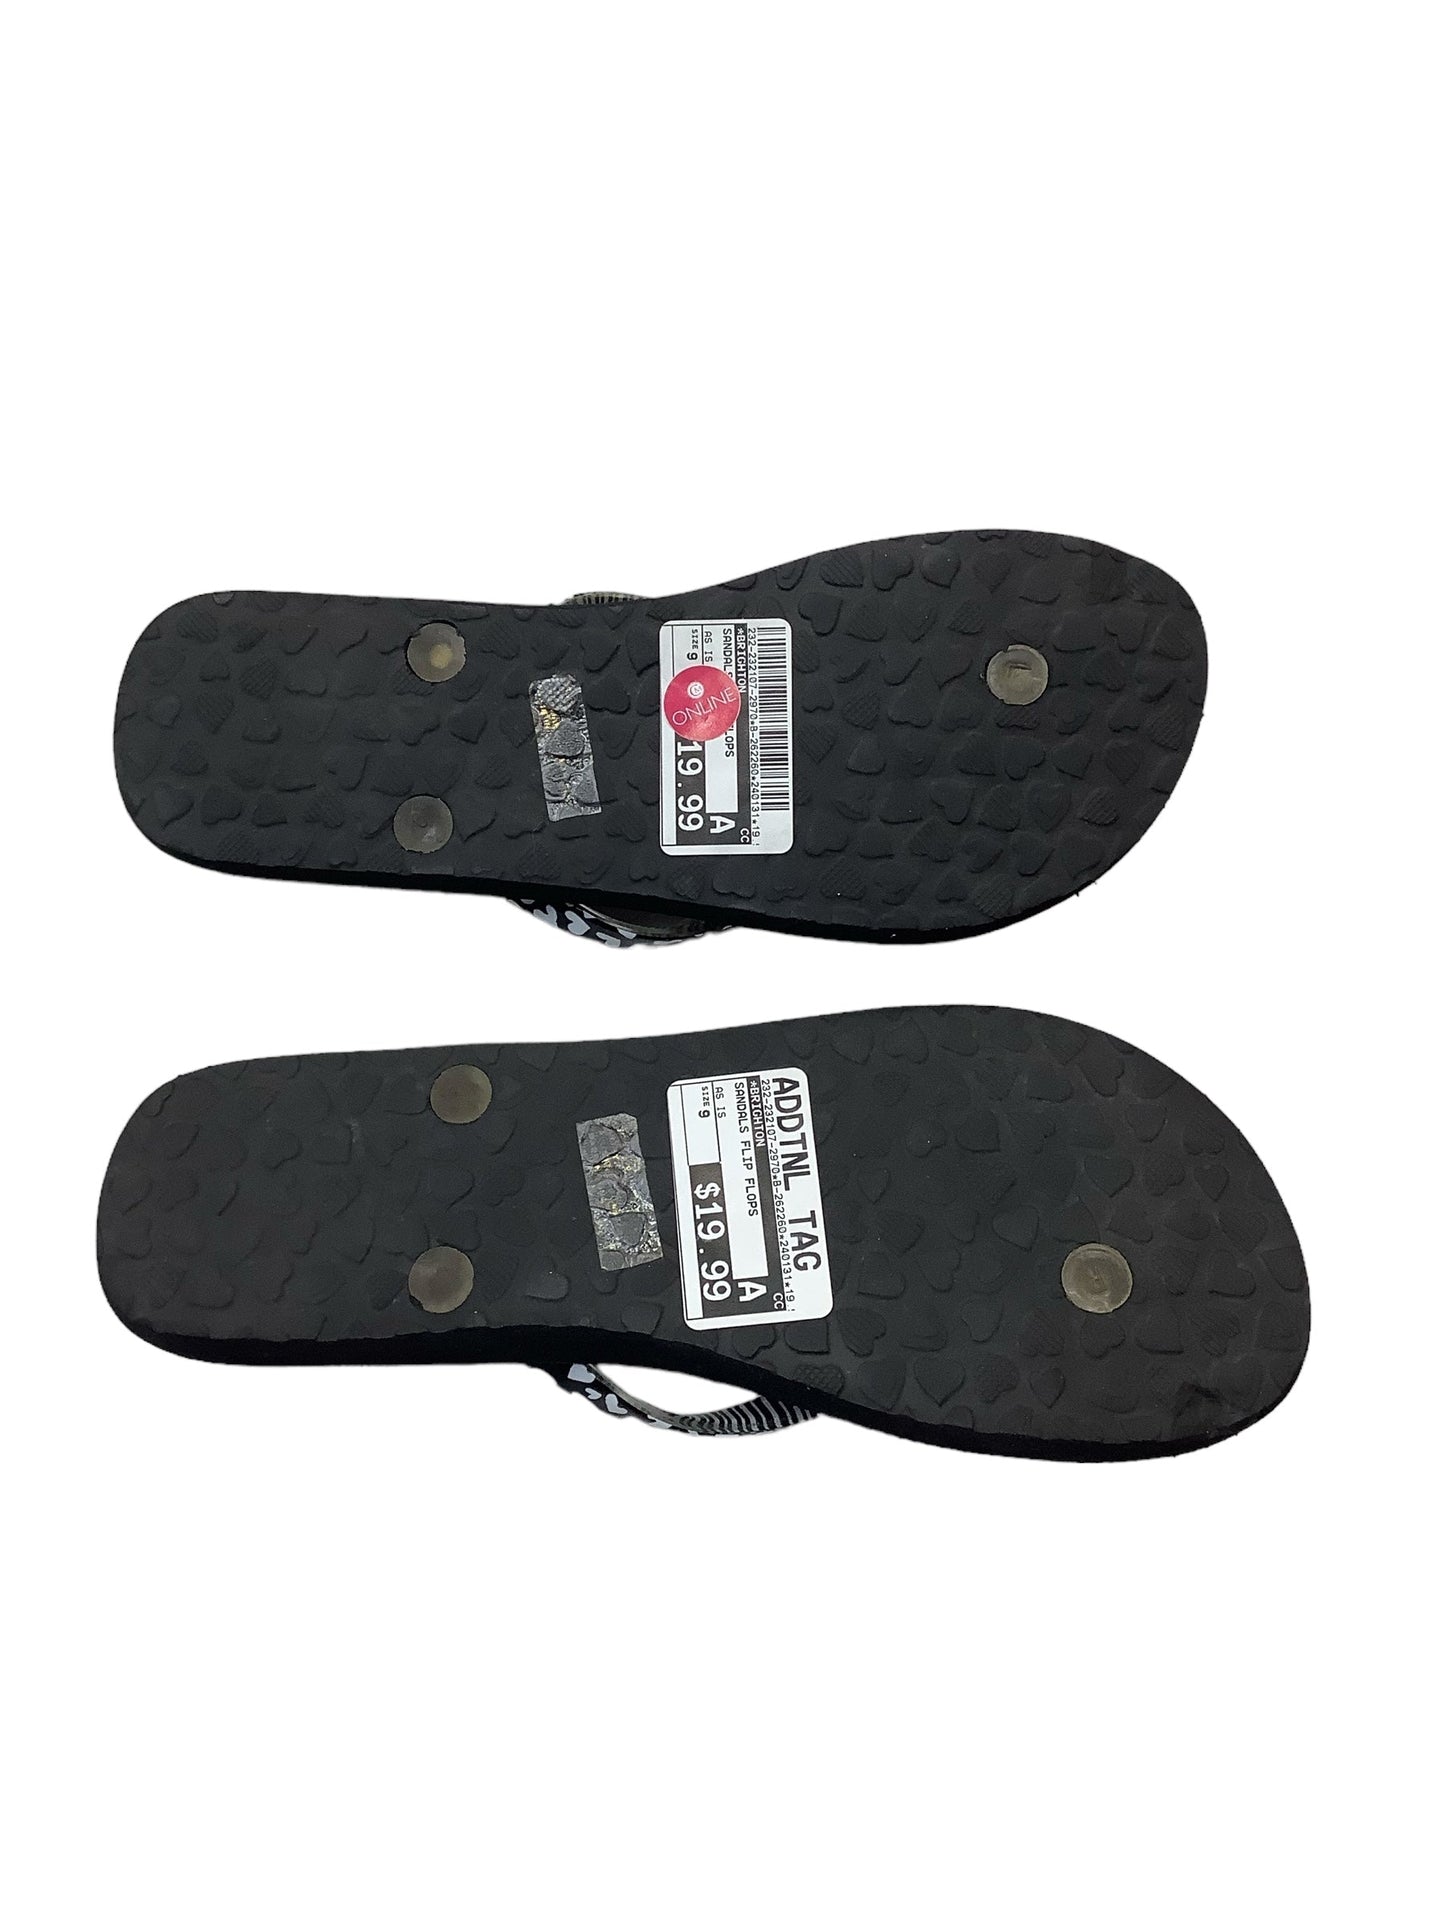 Sandals Flip Flops By Brighton  Size: 9